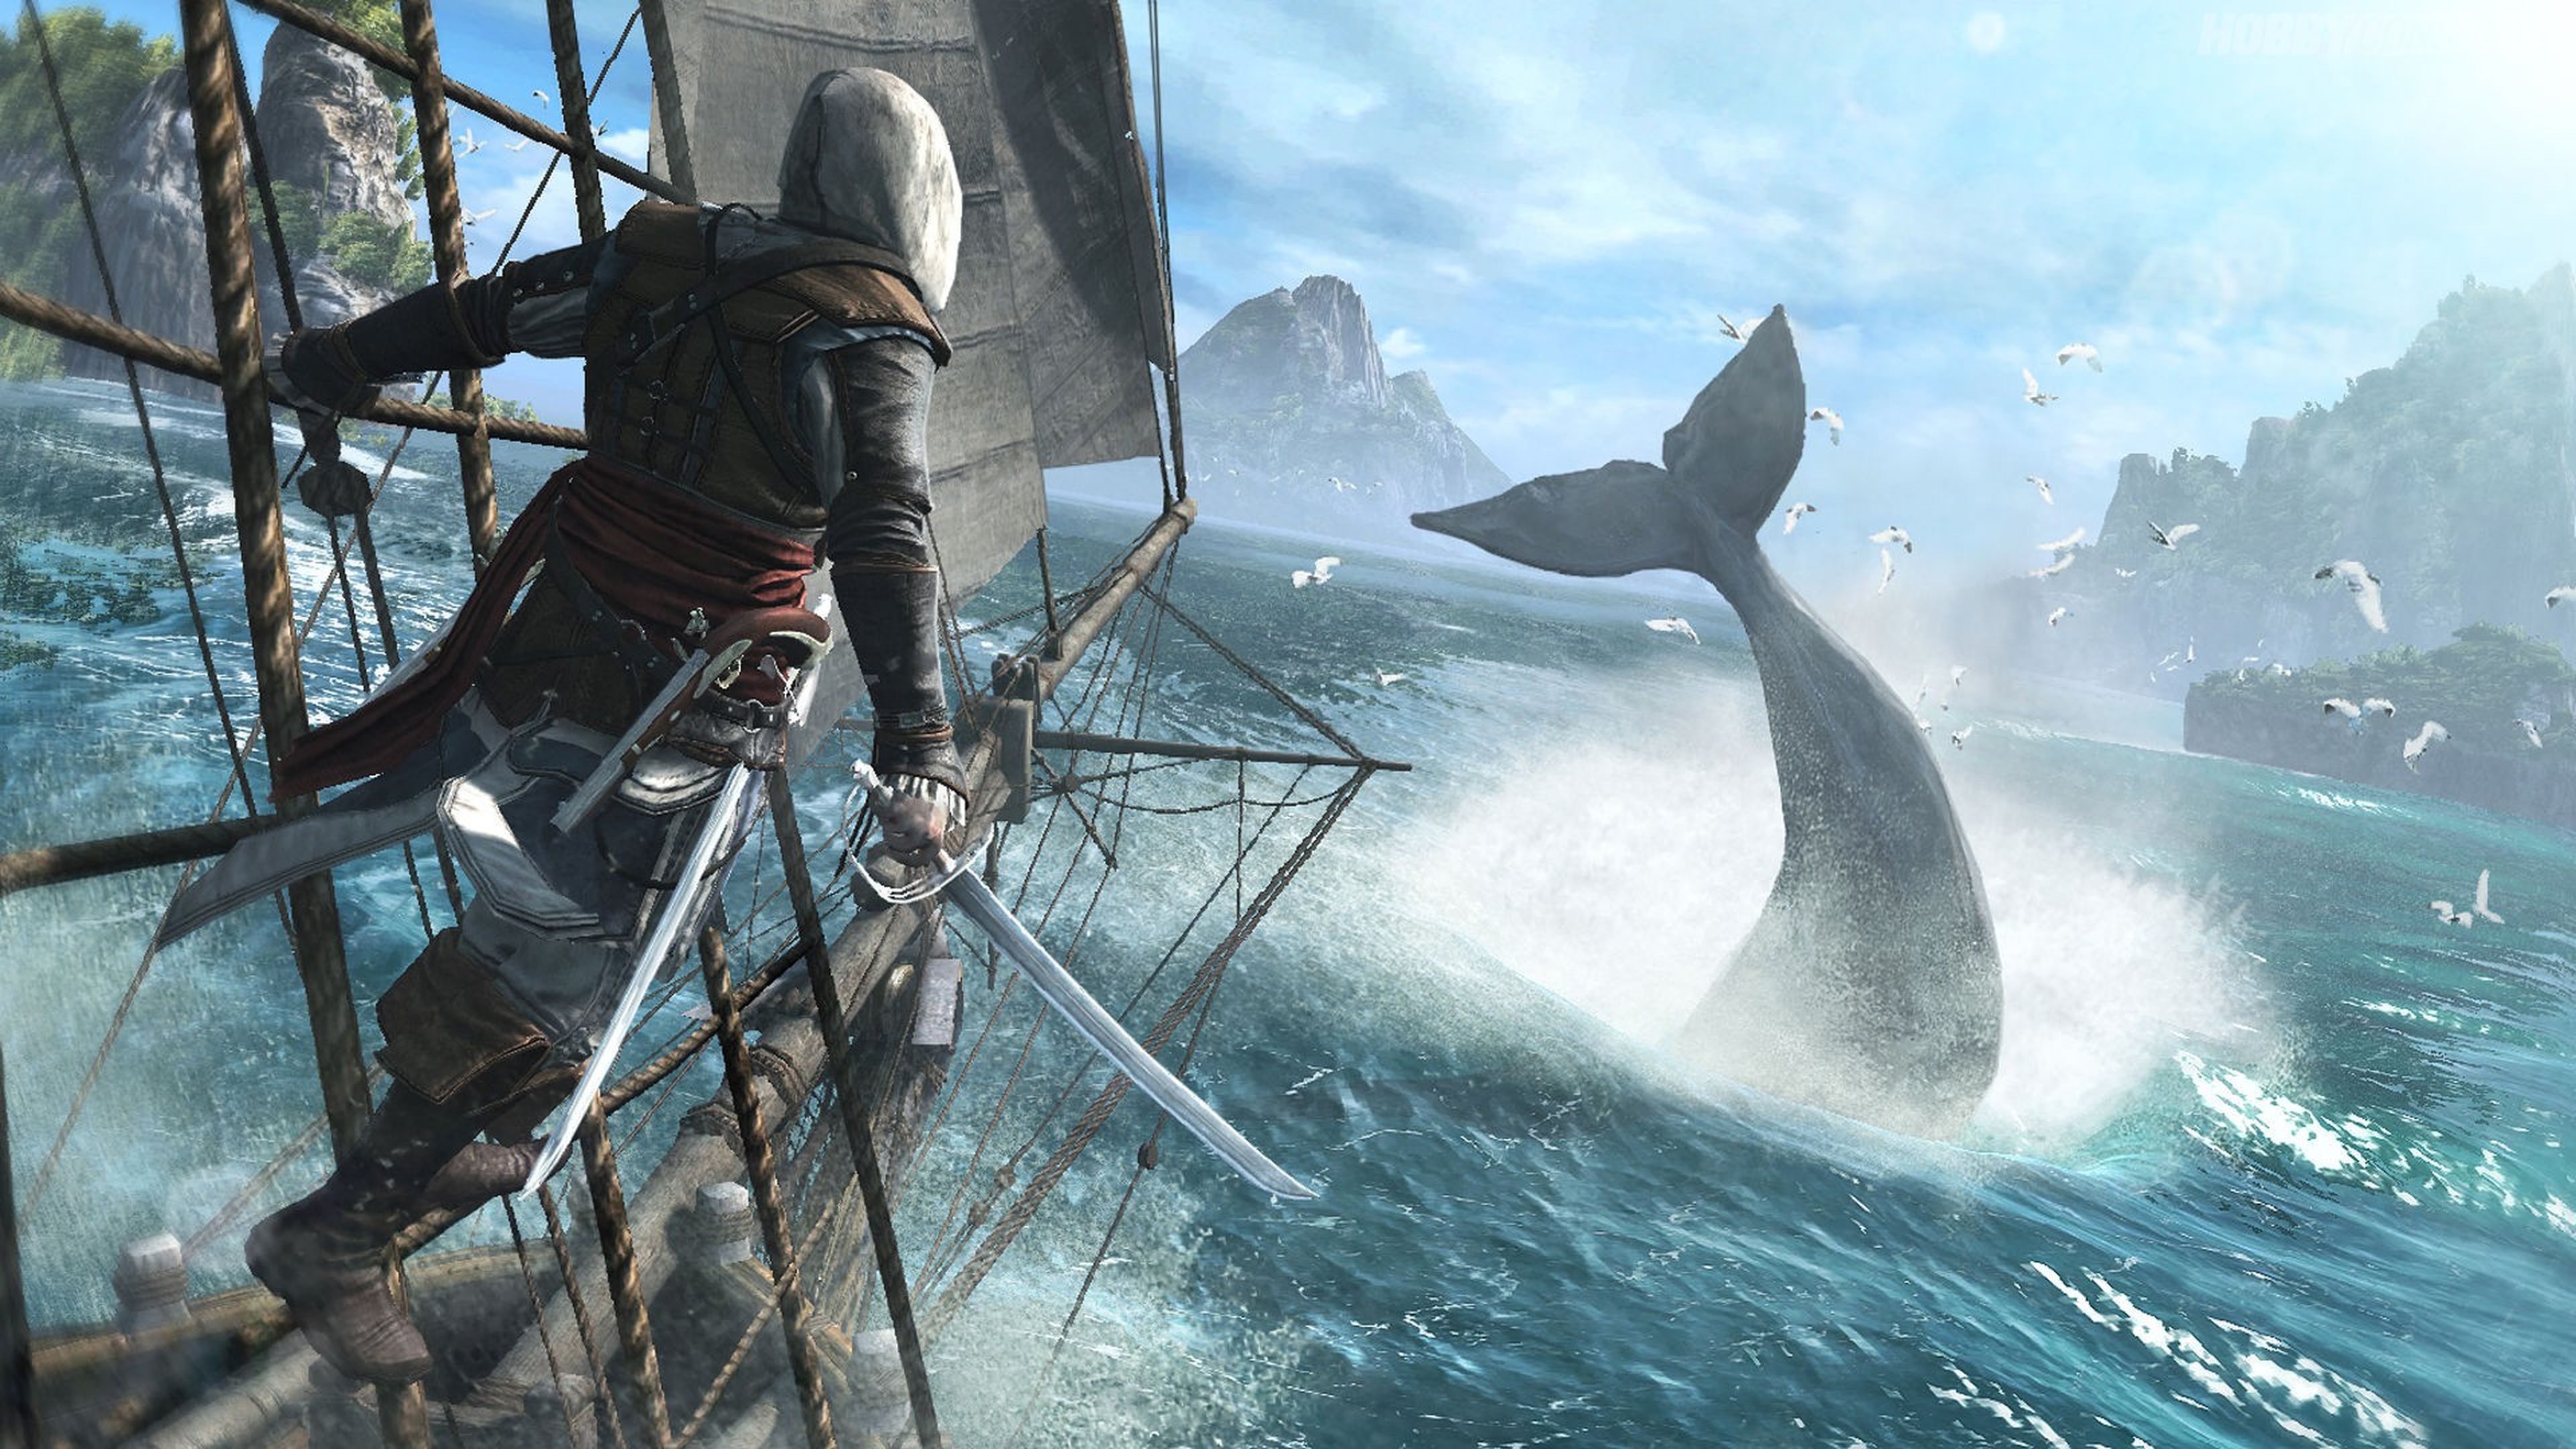 Assassin's Creed 4: ¿primero el motor o la idea?